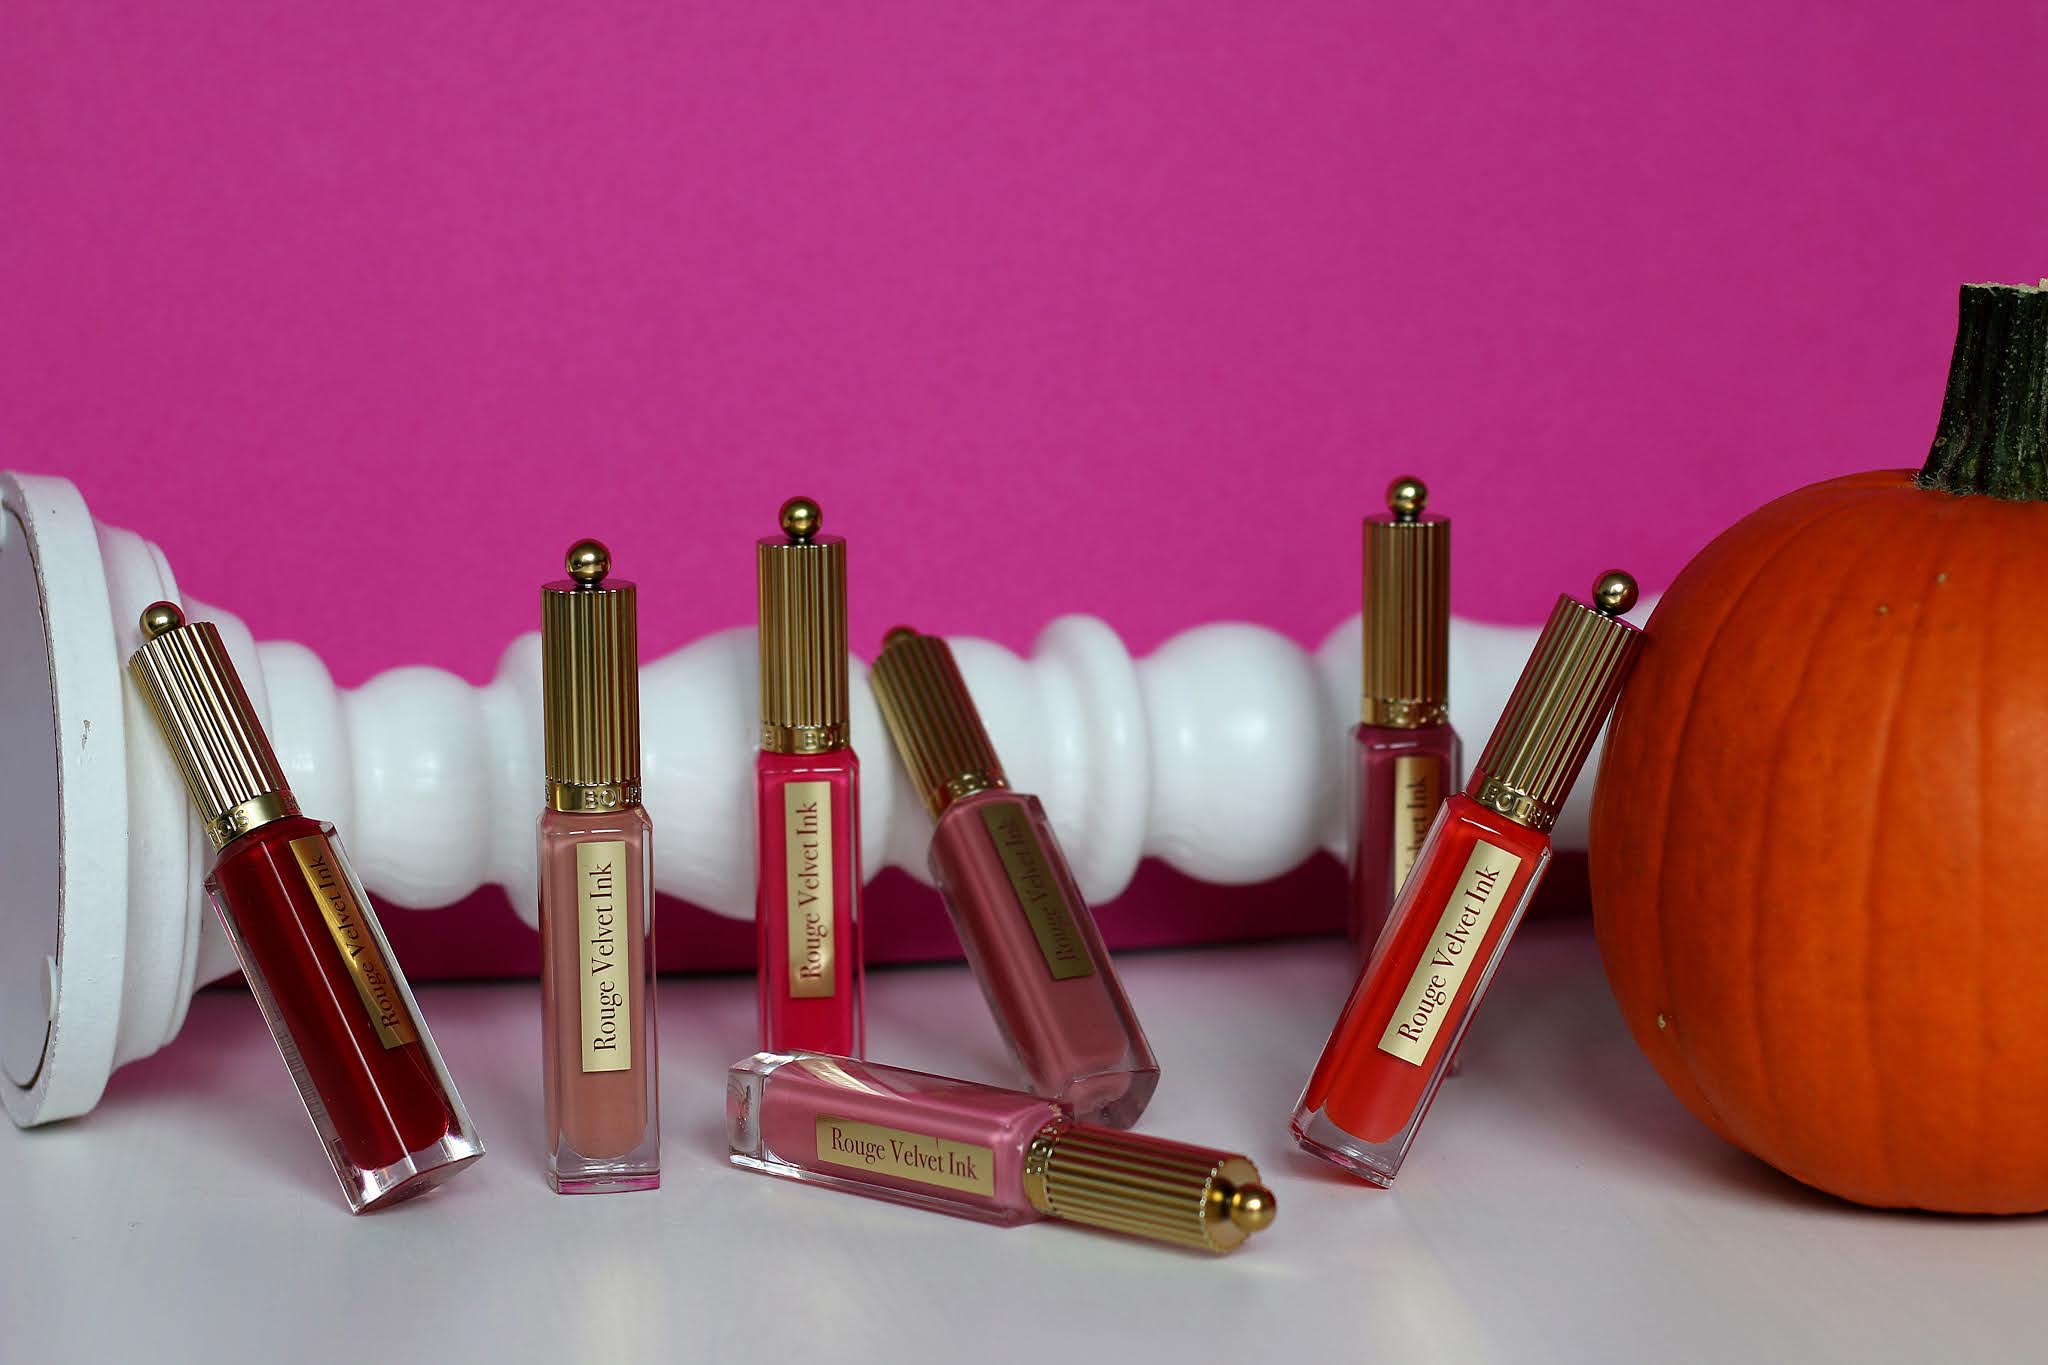 Bourjois Rouge Velvet Ink wszystkie kolory, swatche | Blog kosmetyczny, beauty, moda, makijaże